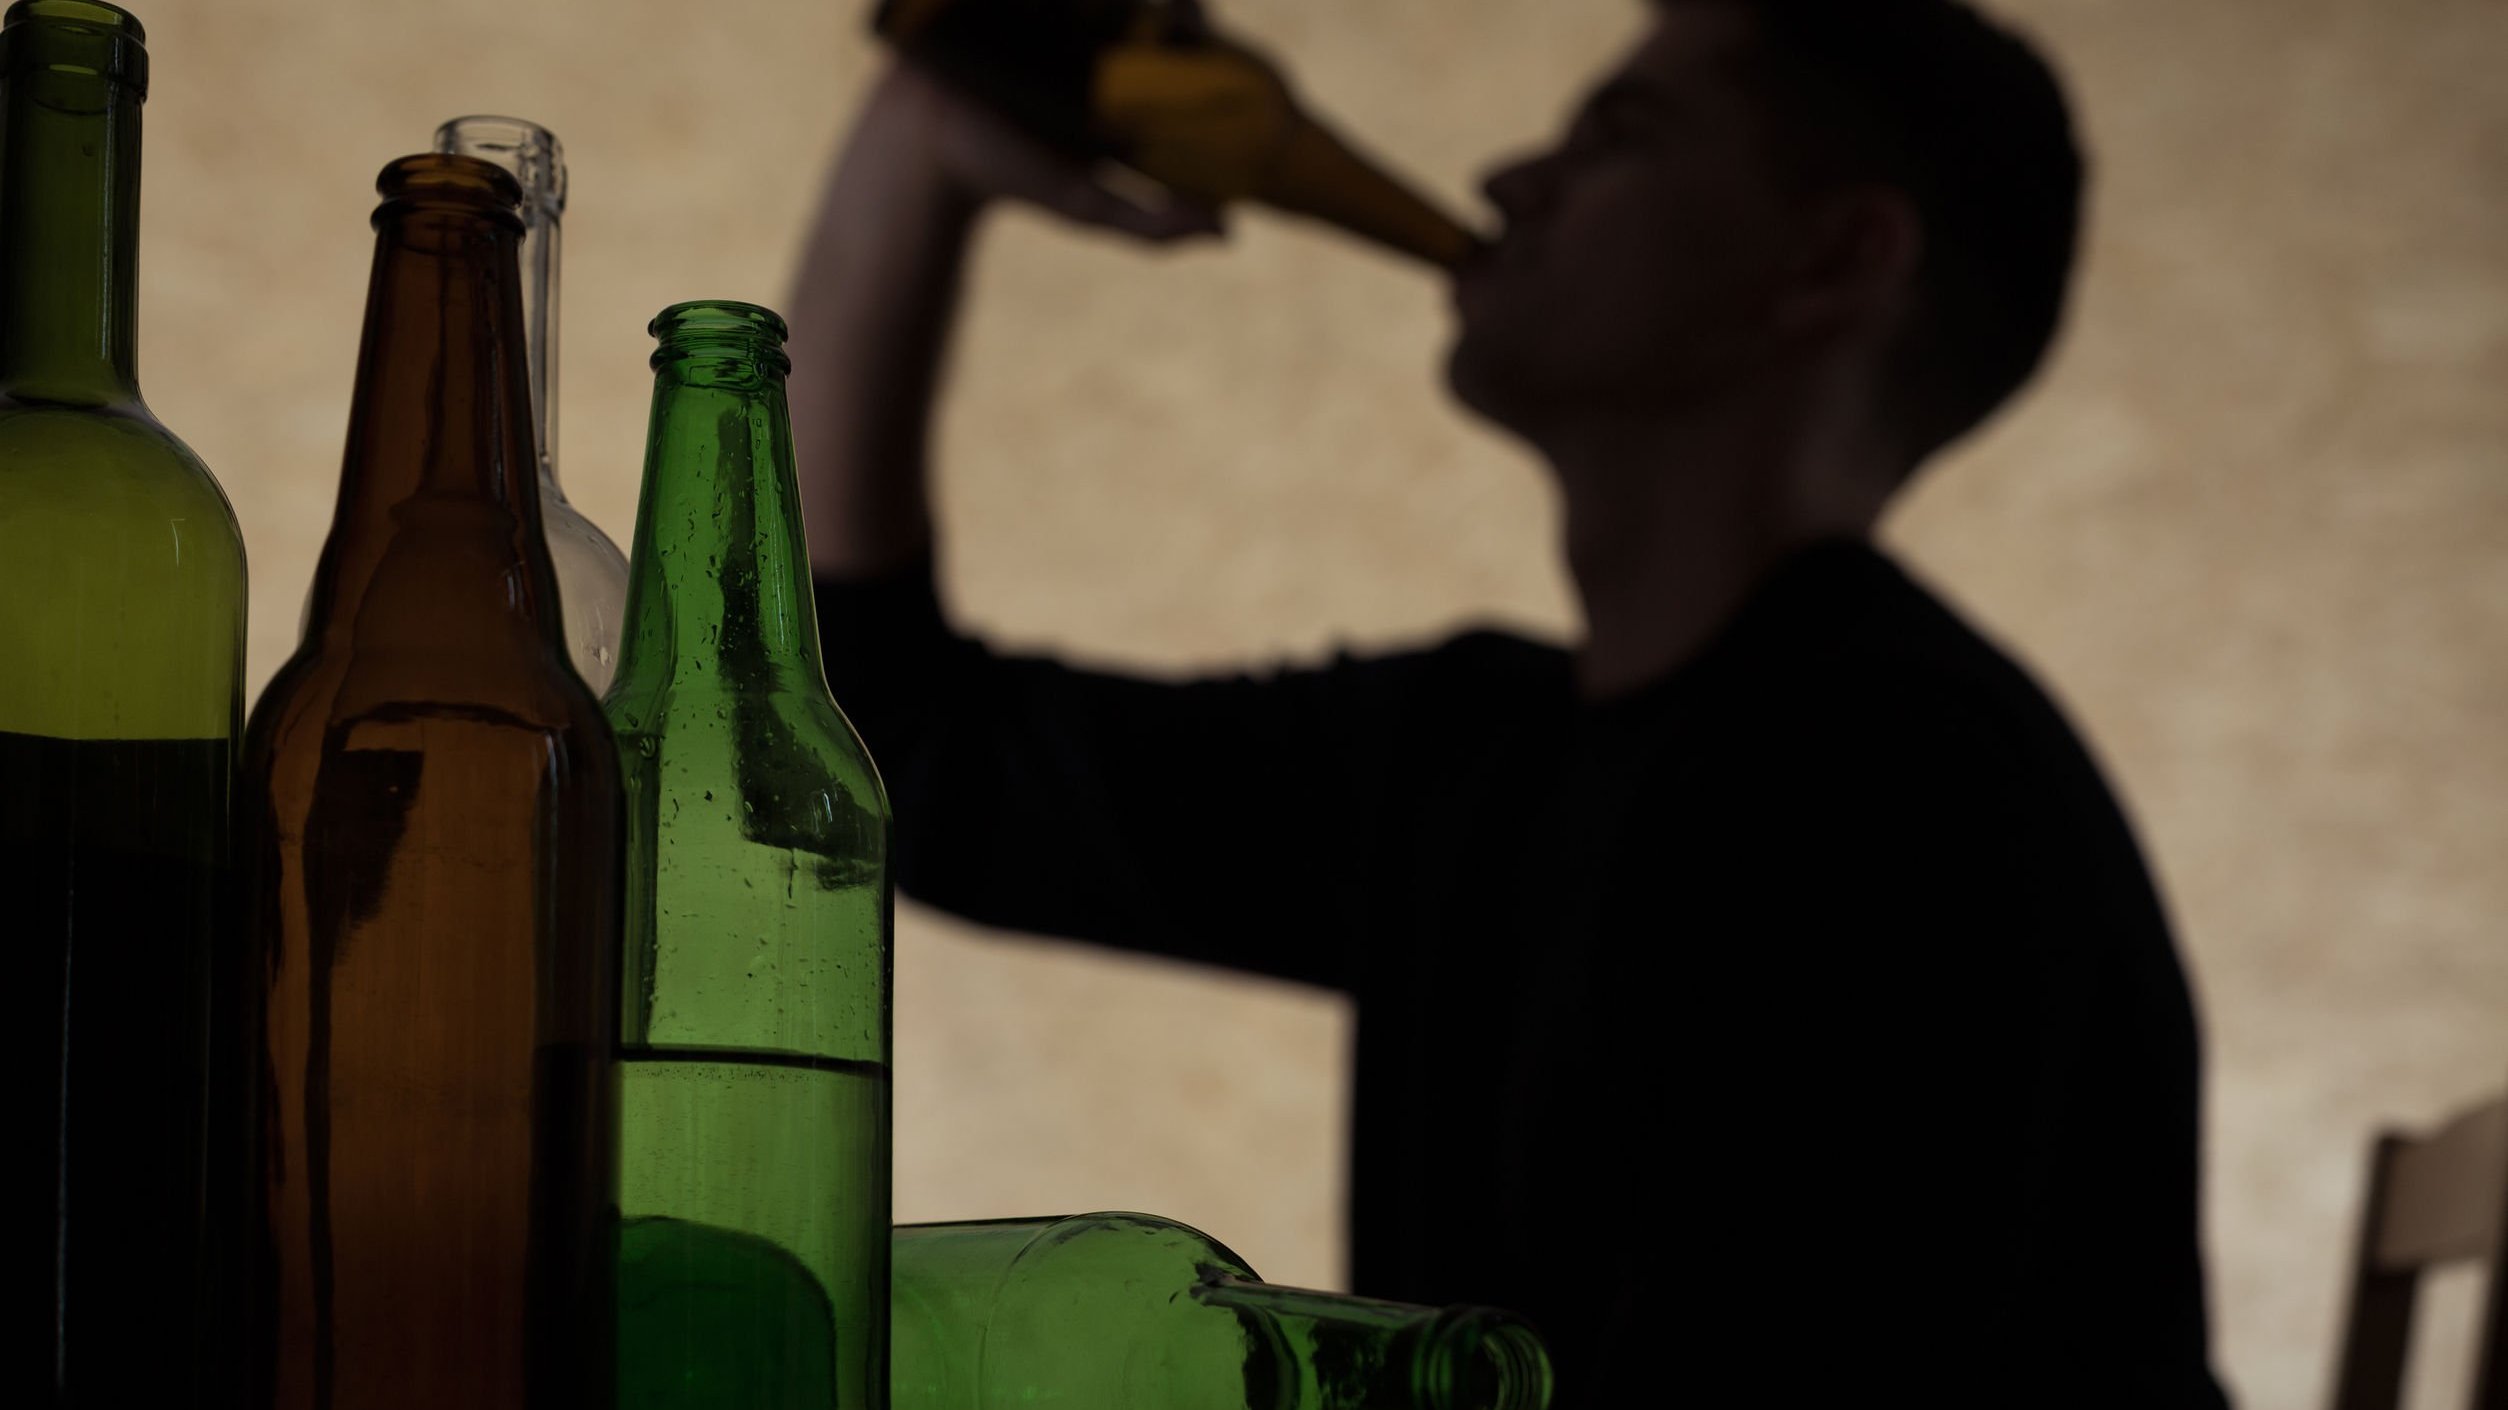 Sombra de um homem tomando bebida e algumas garrafas abertas a sua frente